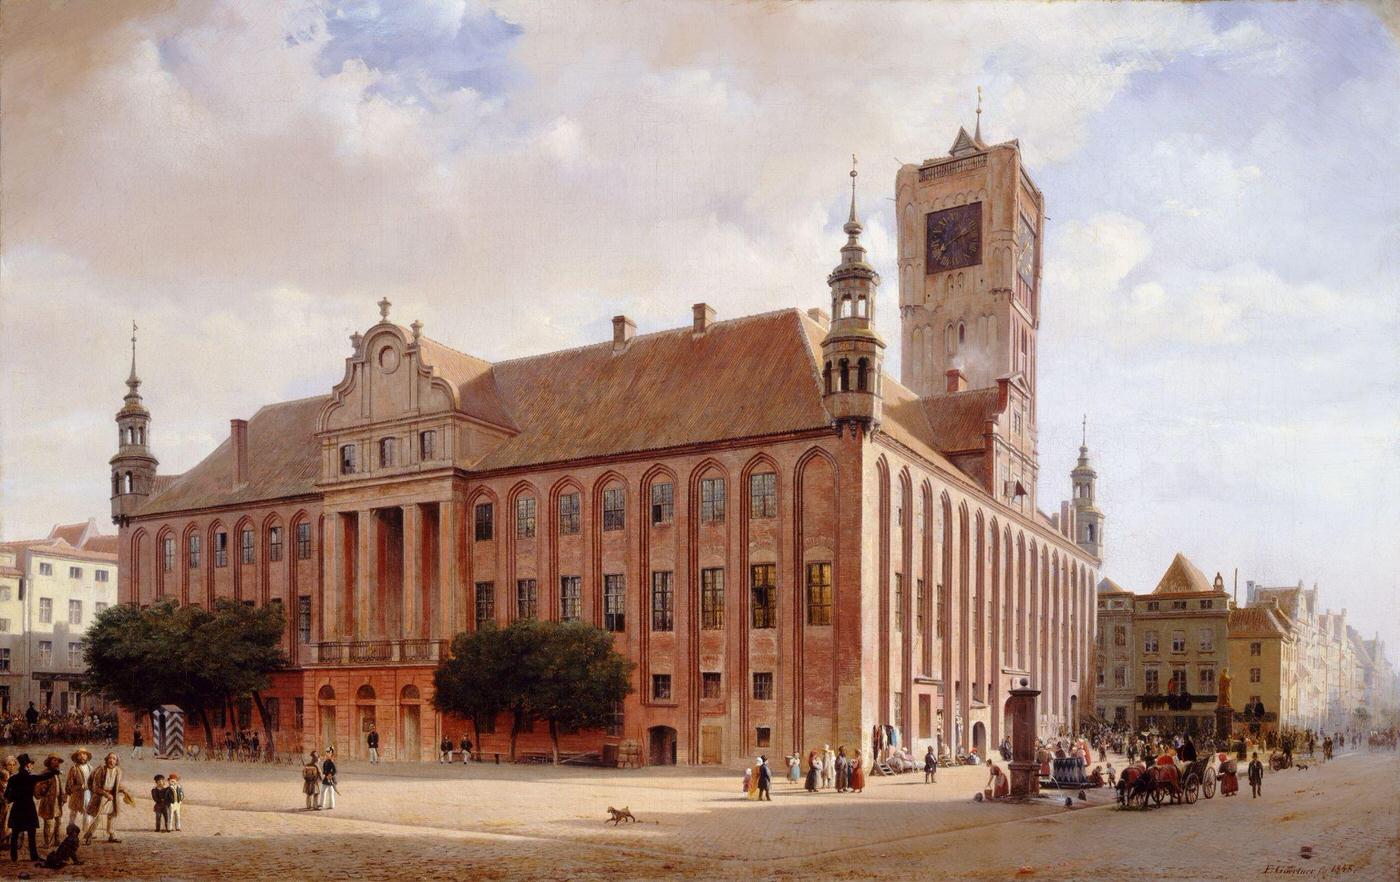 City Hall at Thorn, 1848, artist Eduard Gaertner.